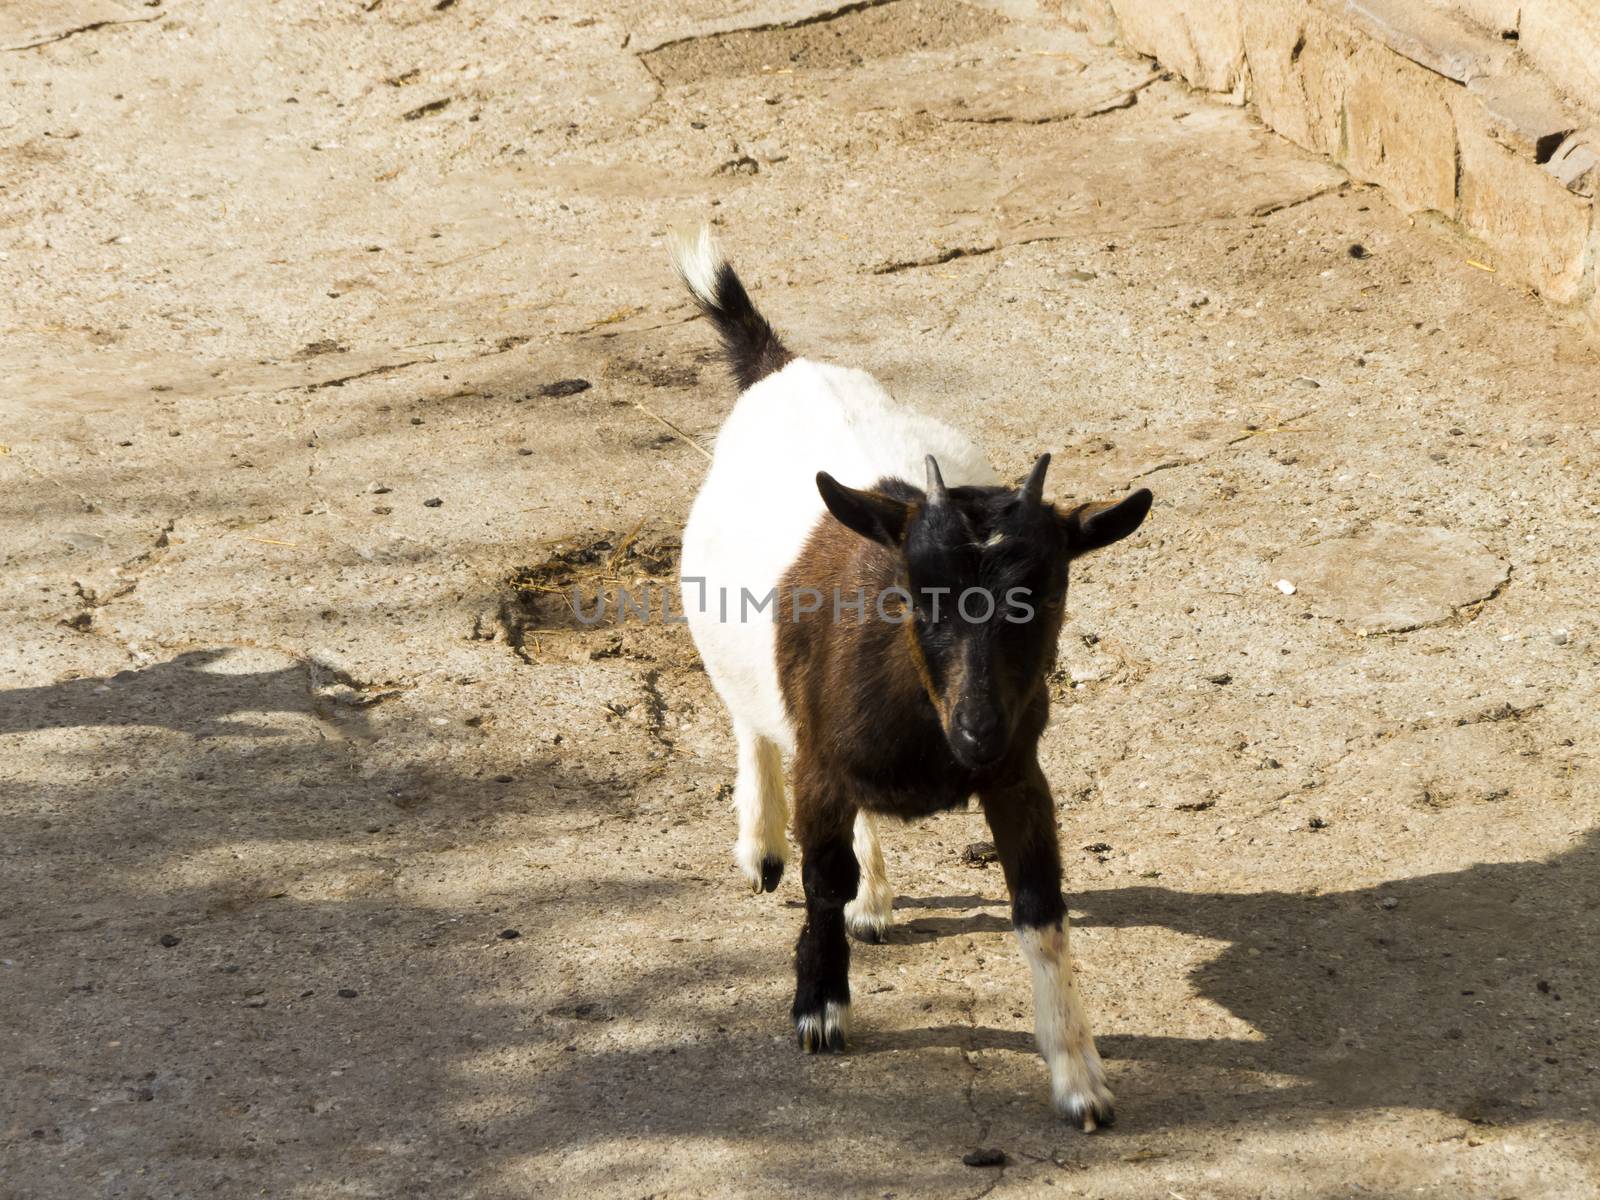 Small cattle by selezenj